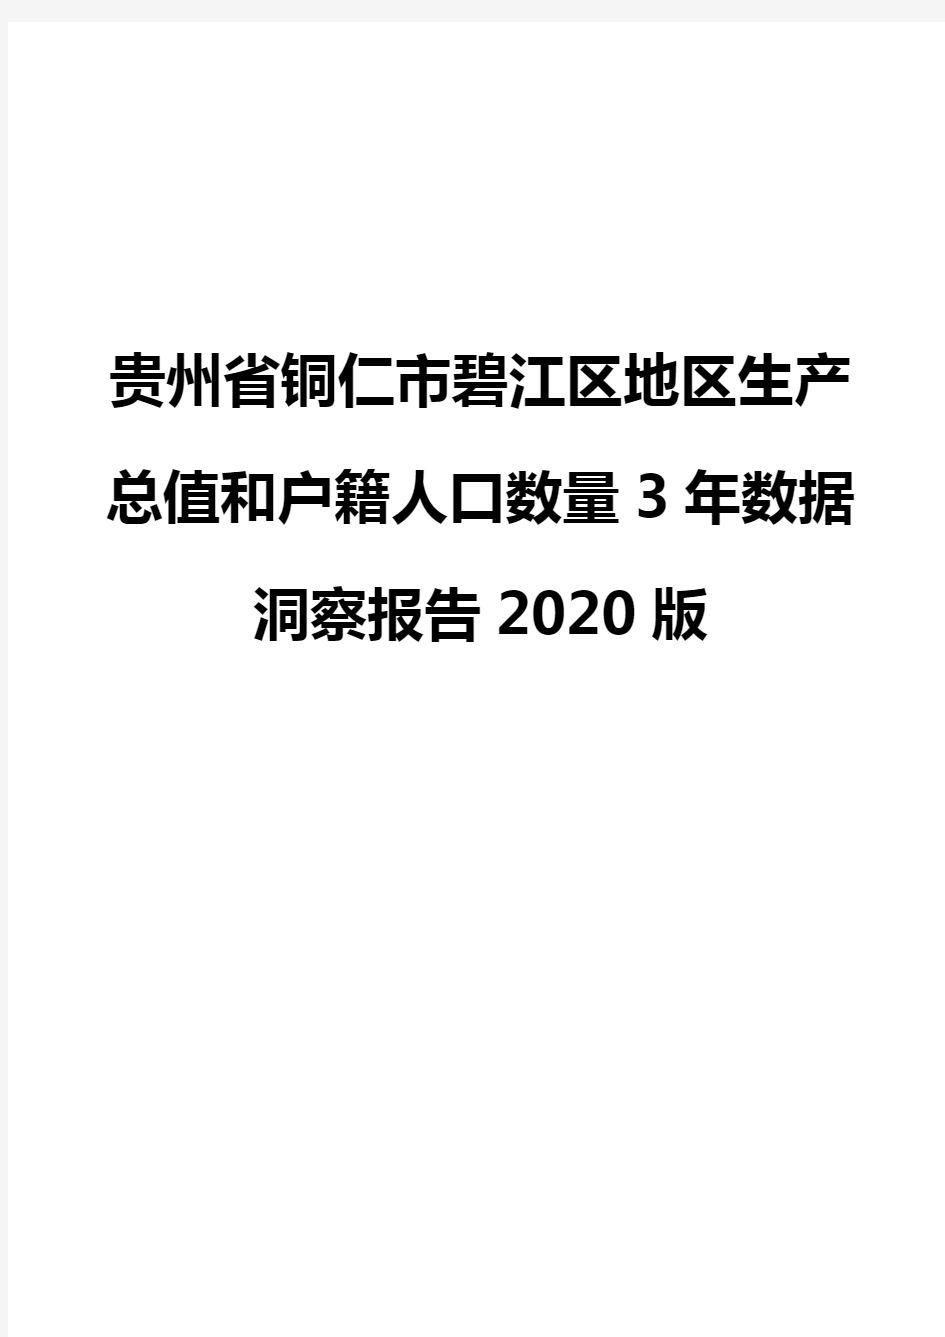 贵州省铜仁市碧江区地区生产总值和户籍人口数量3年数据洞察报告2020版